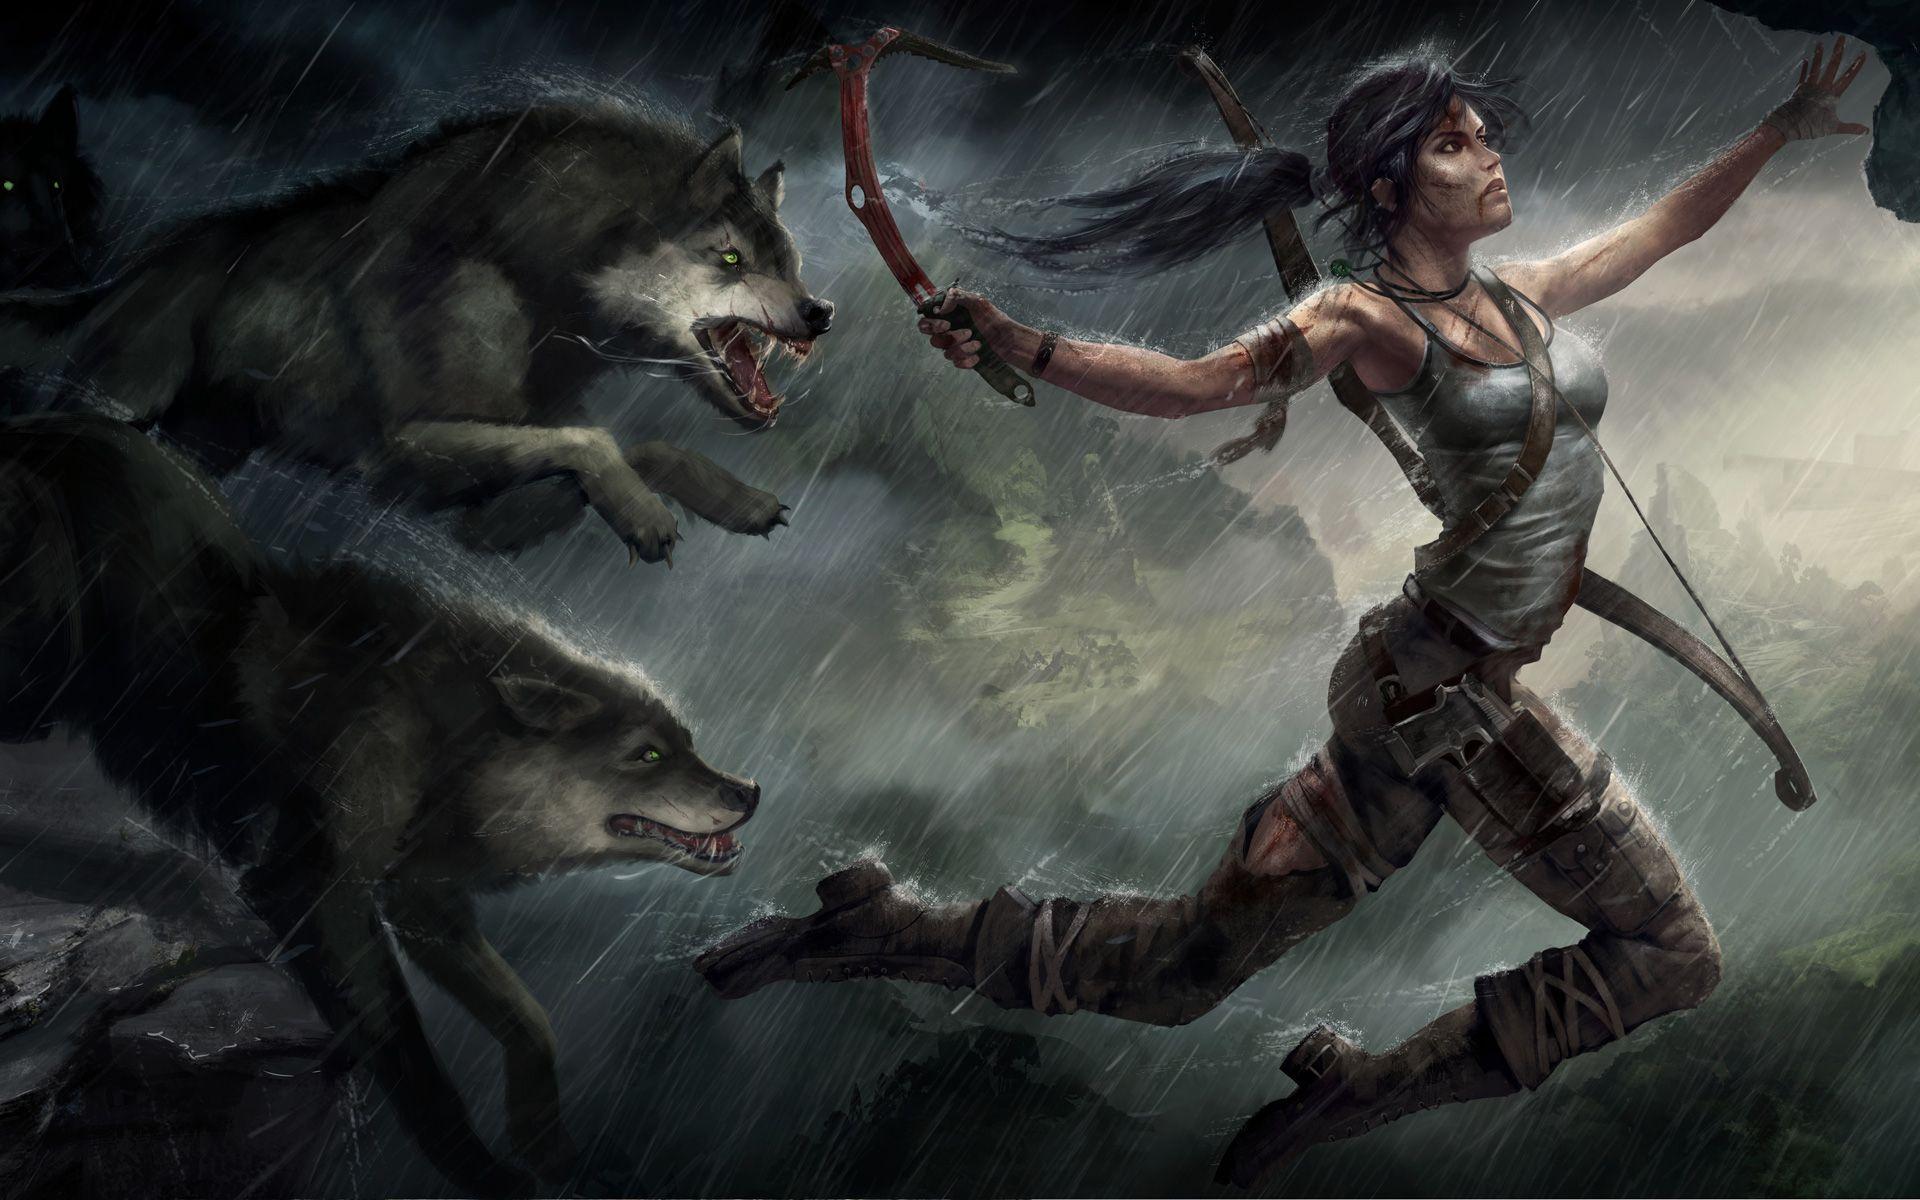 1920x1200 Tomb Raider Người hâm mộ Art Tomb Raider Games Hình nền Res: 1920x1200